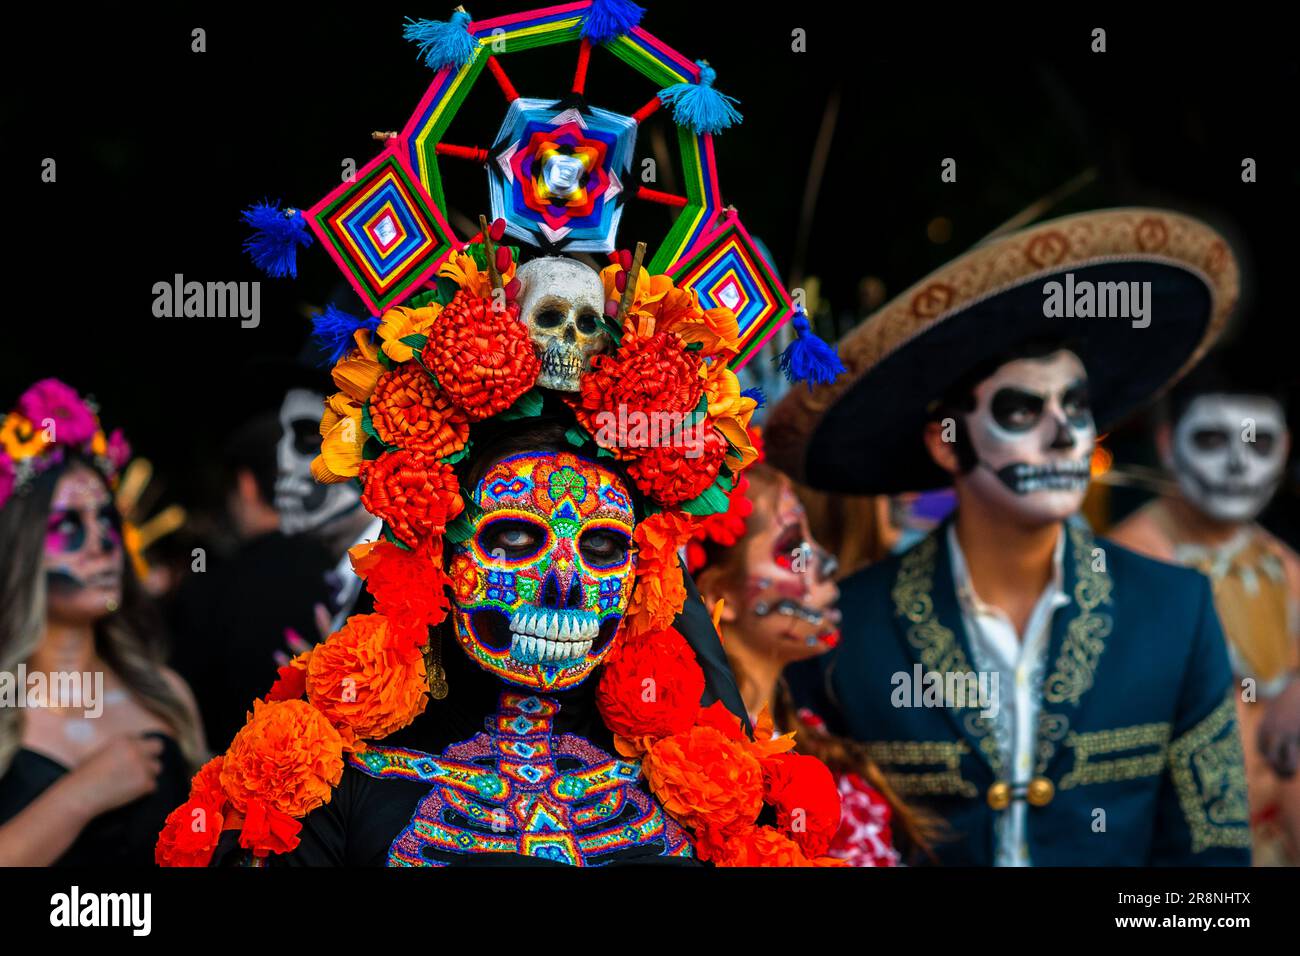 Eine Mexikanerin, die als La Catrina verkleidet ist und Huichol Perlenmaske und -Kleid trägt, nimmt an den Feierlichkeiten zum Todestag in Morelia, Mexiko, Teil. Stockfoto